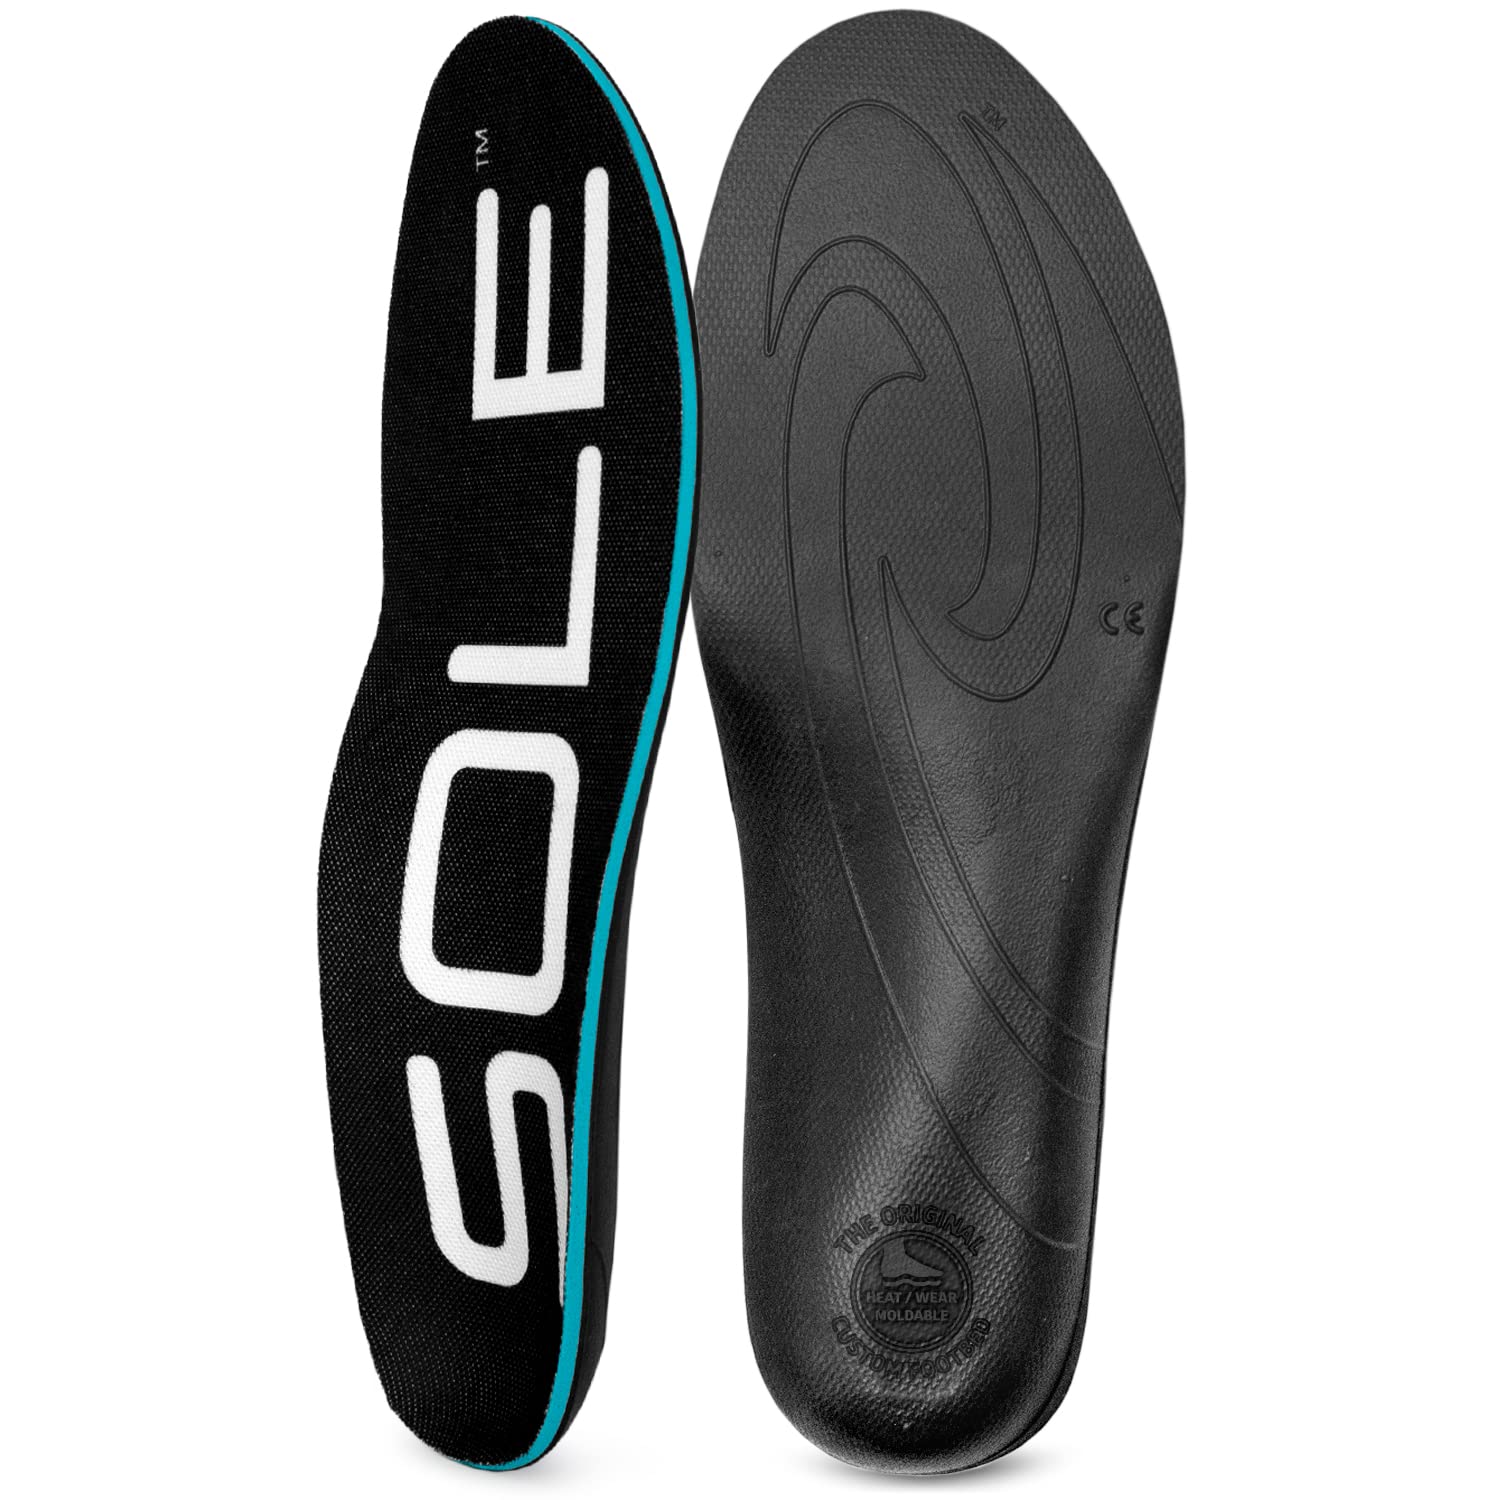 SOLE Active Thick Insoles - Men's Size 10/Women's Size 12 Black